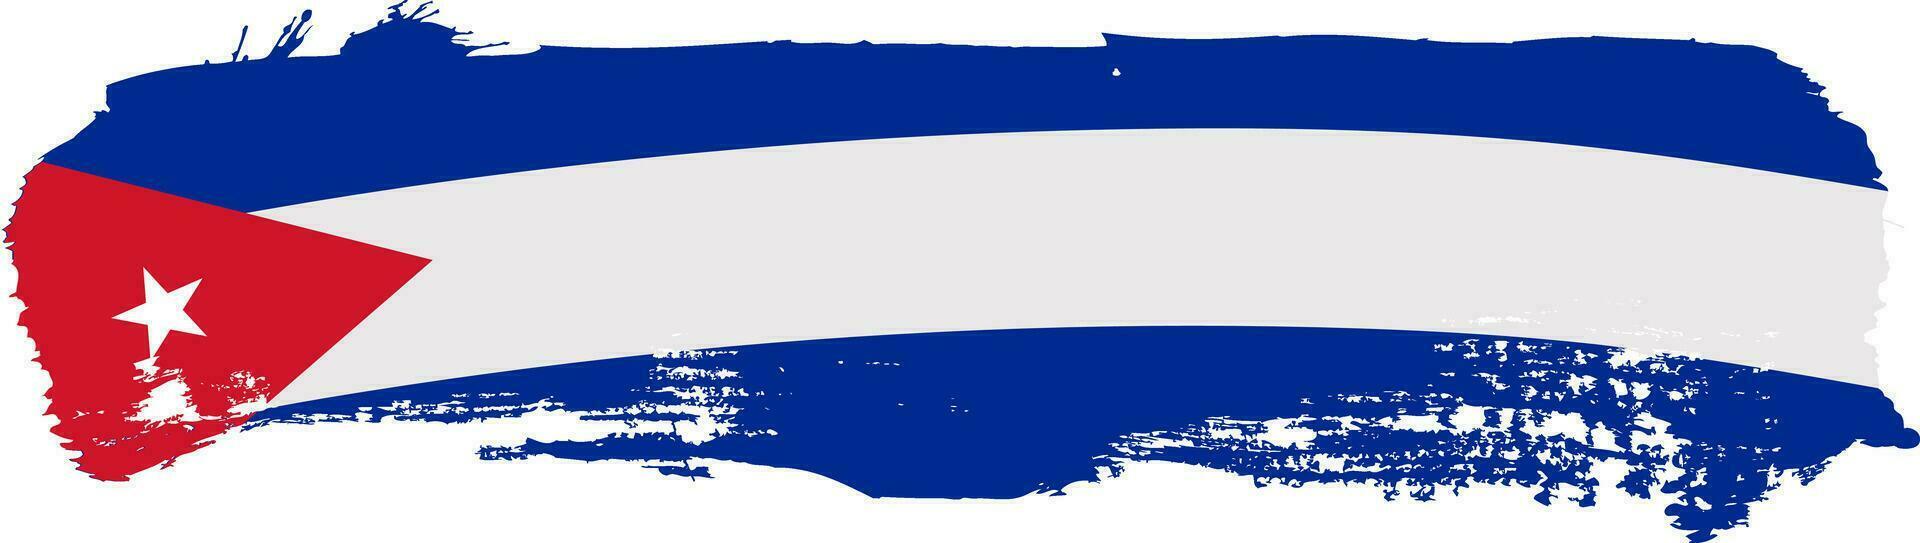 Cuba bandera grunge estilo vector ilustración